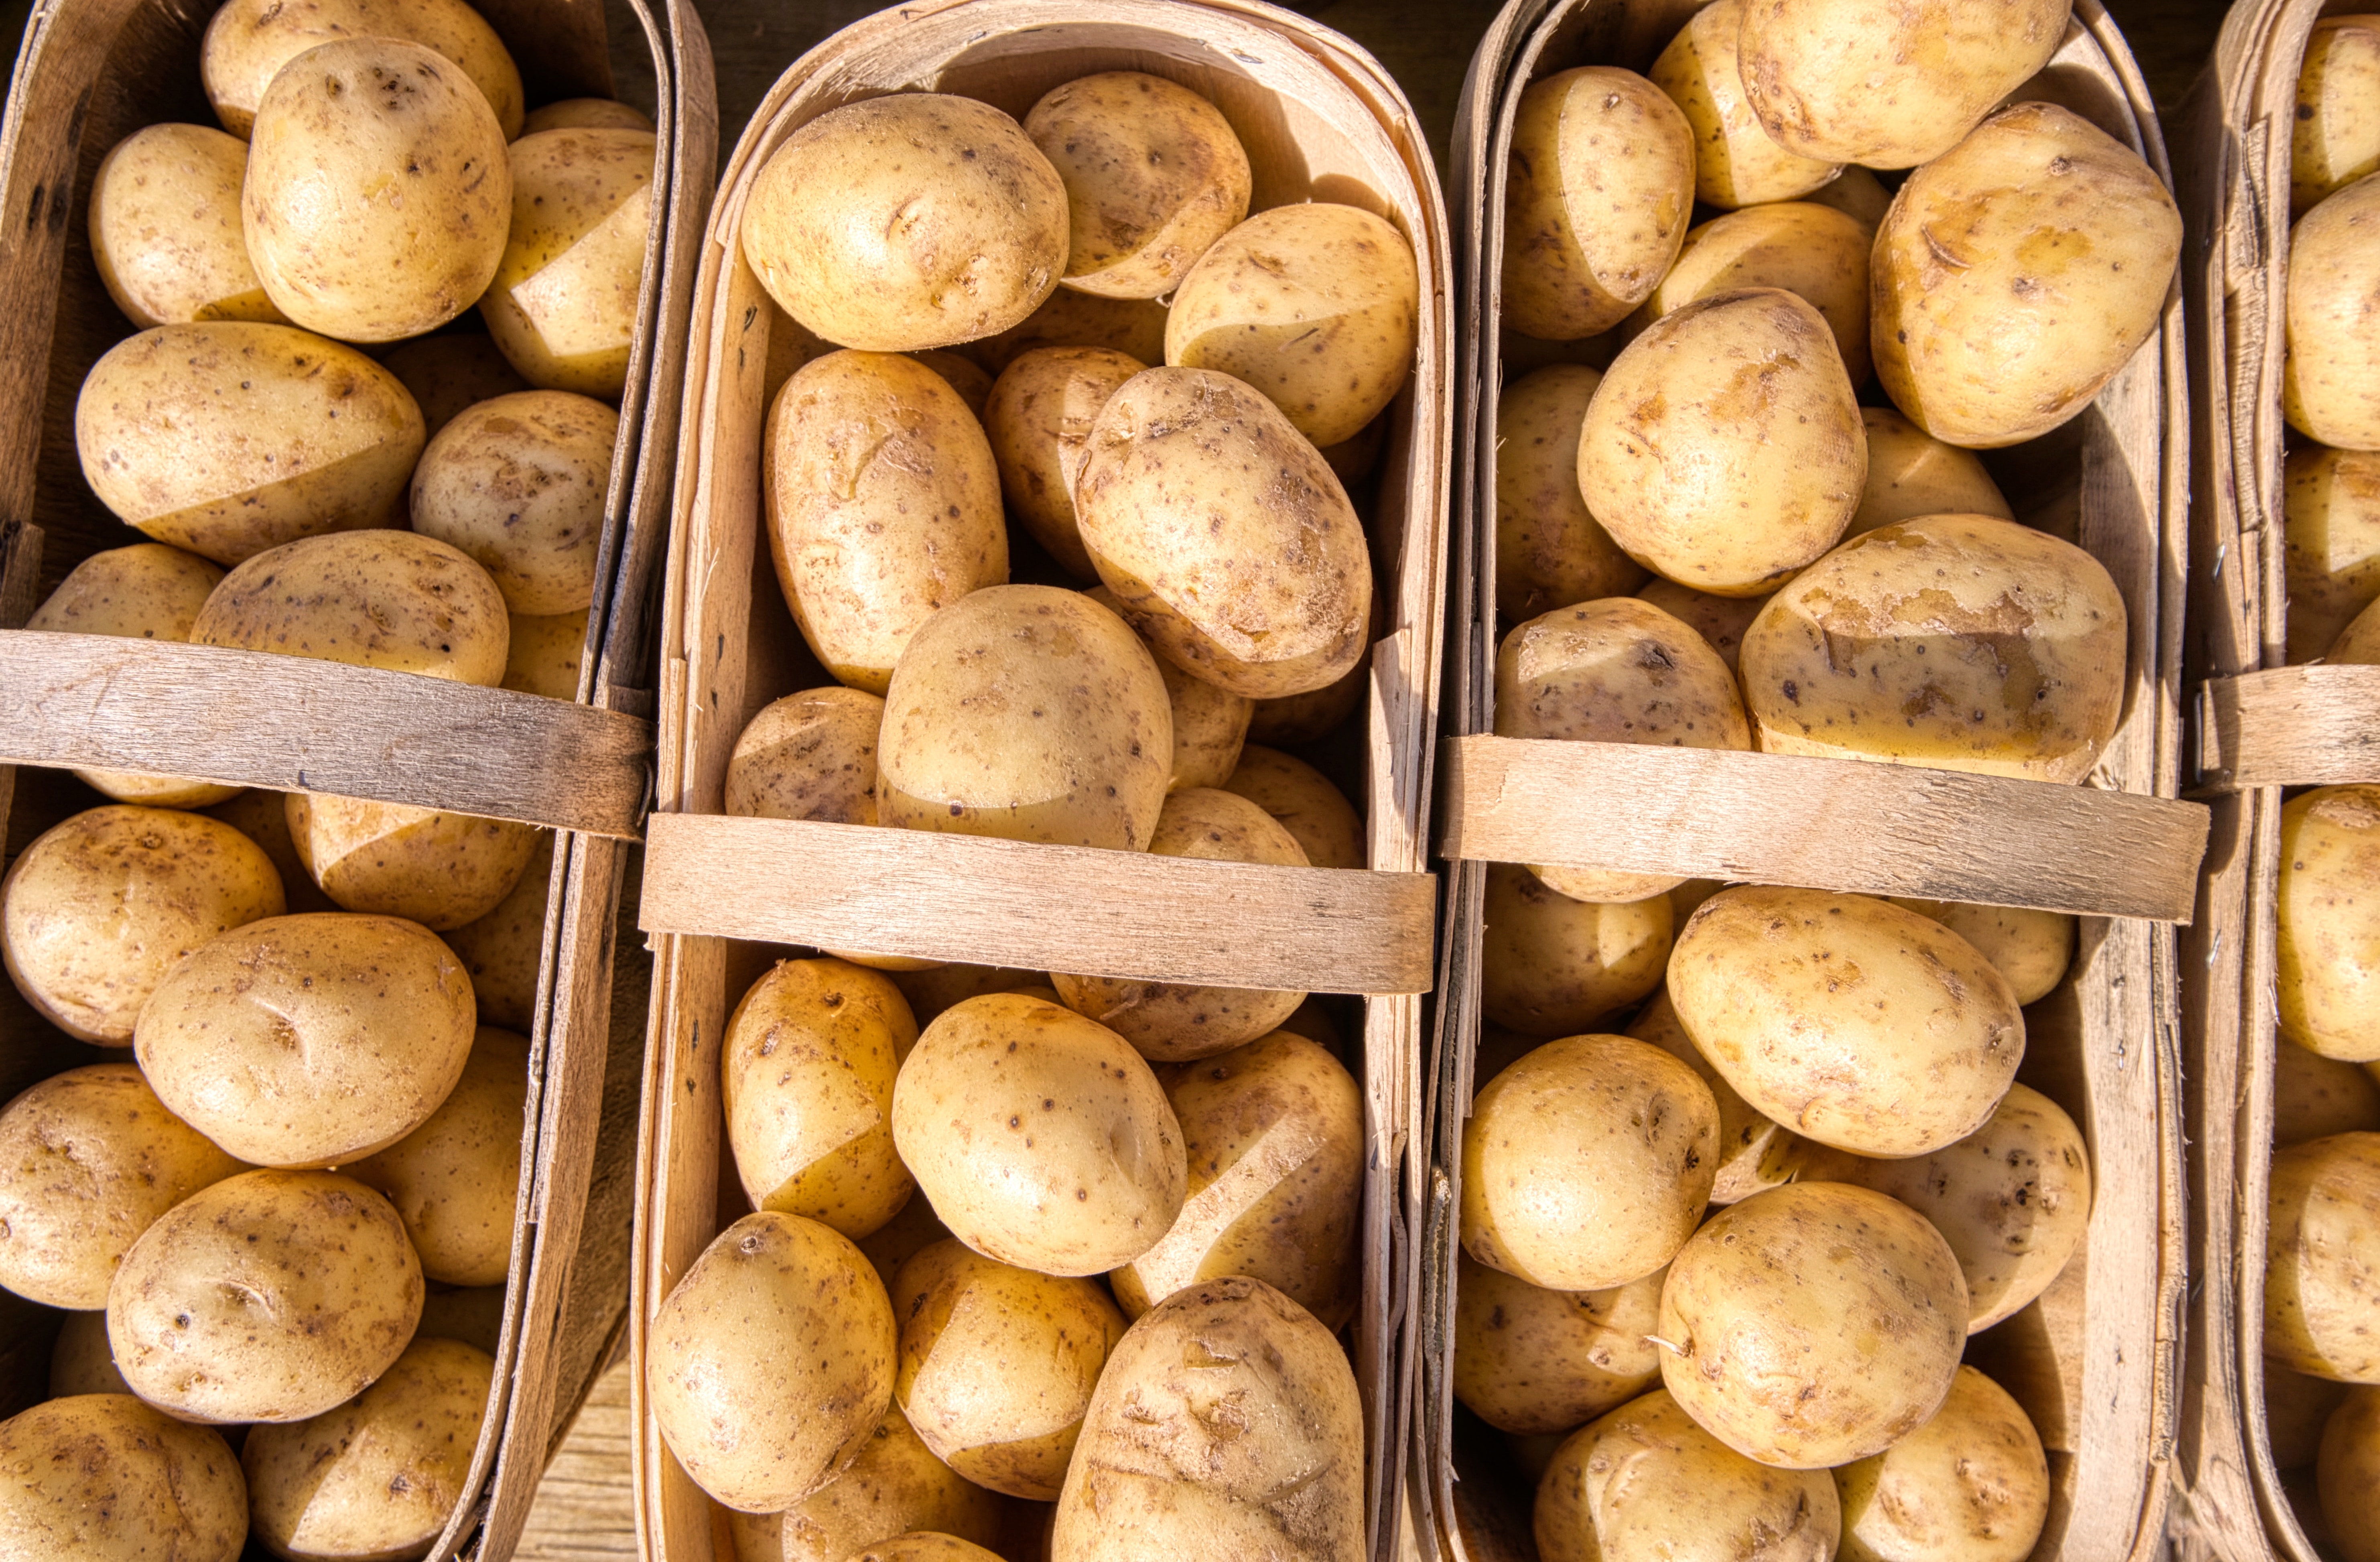 Les pommes de terre peuvent faire partie d'un régime alimentaire sain